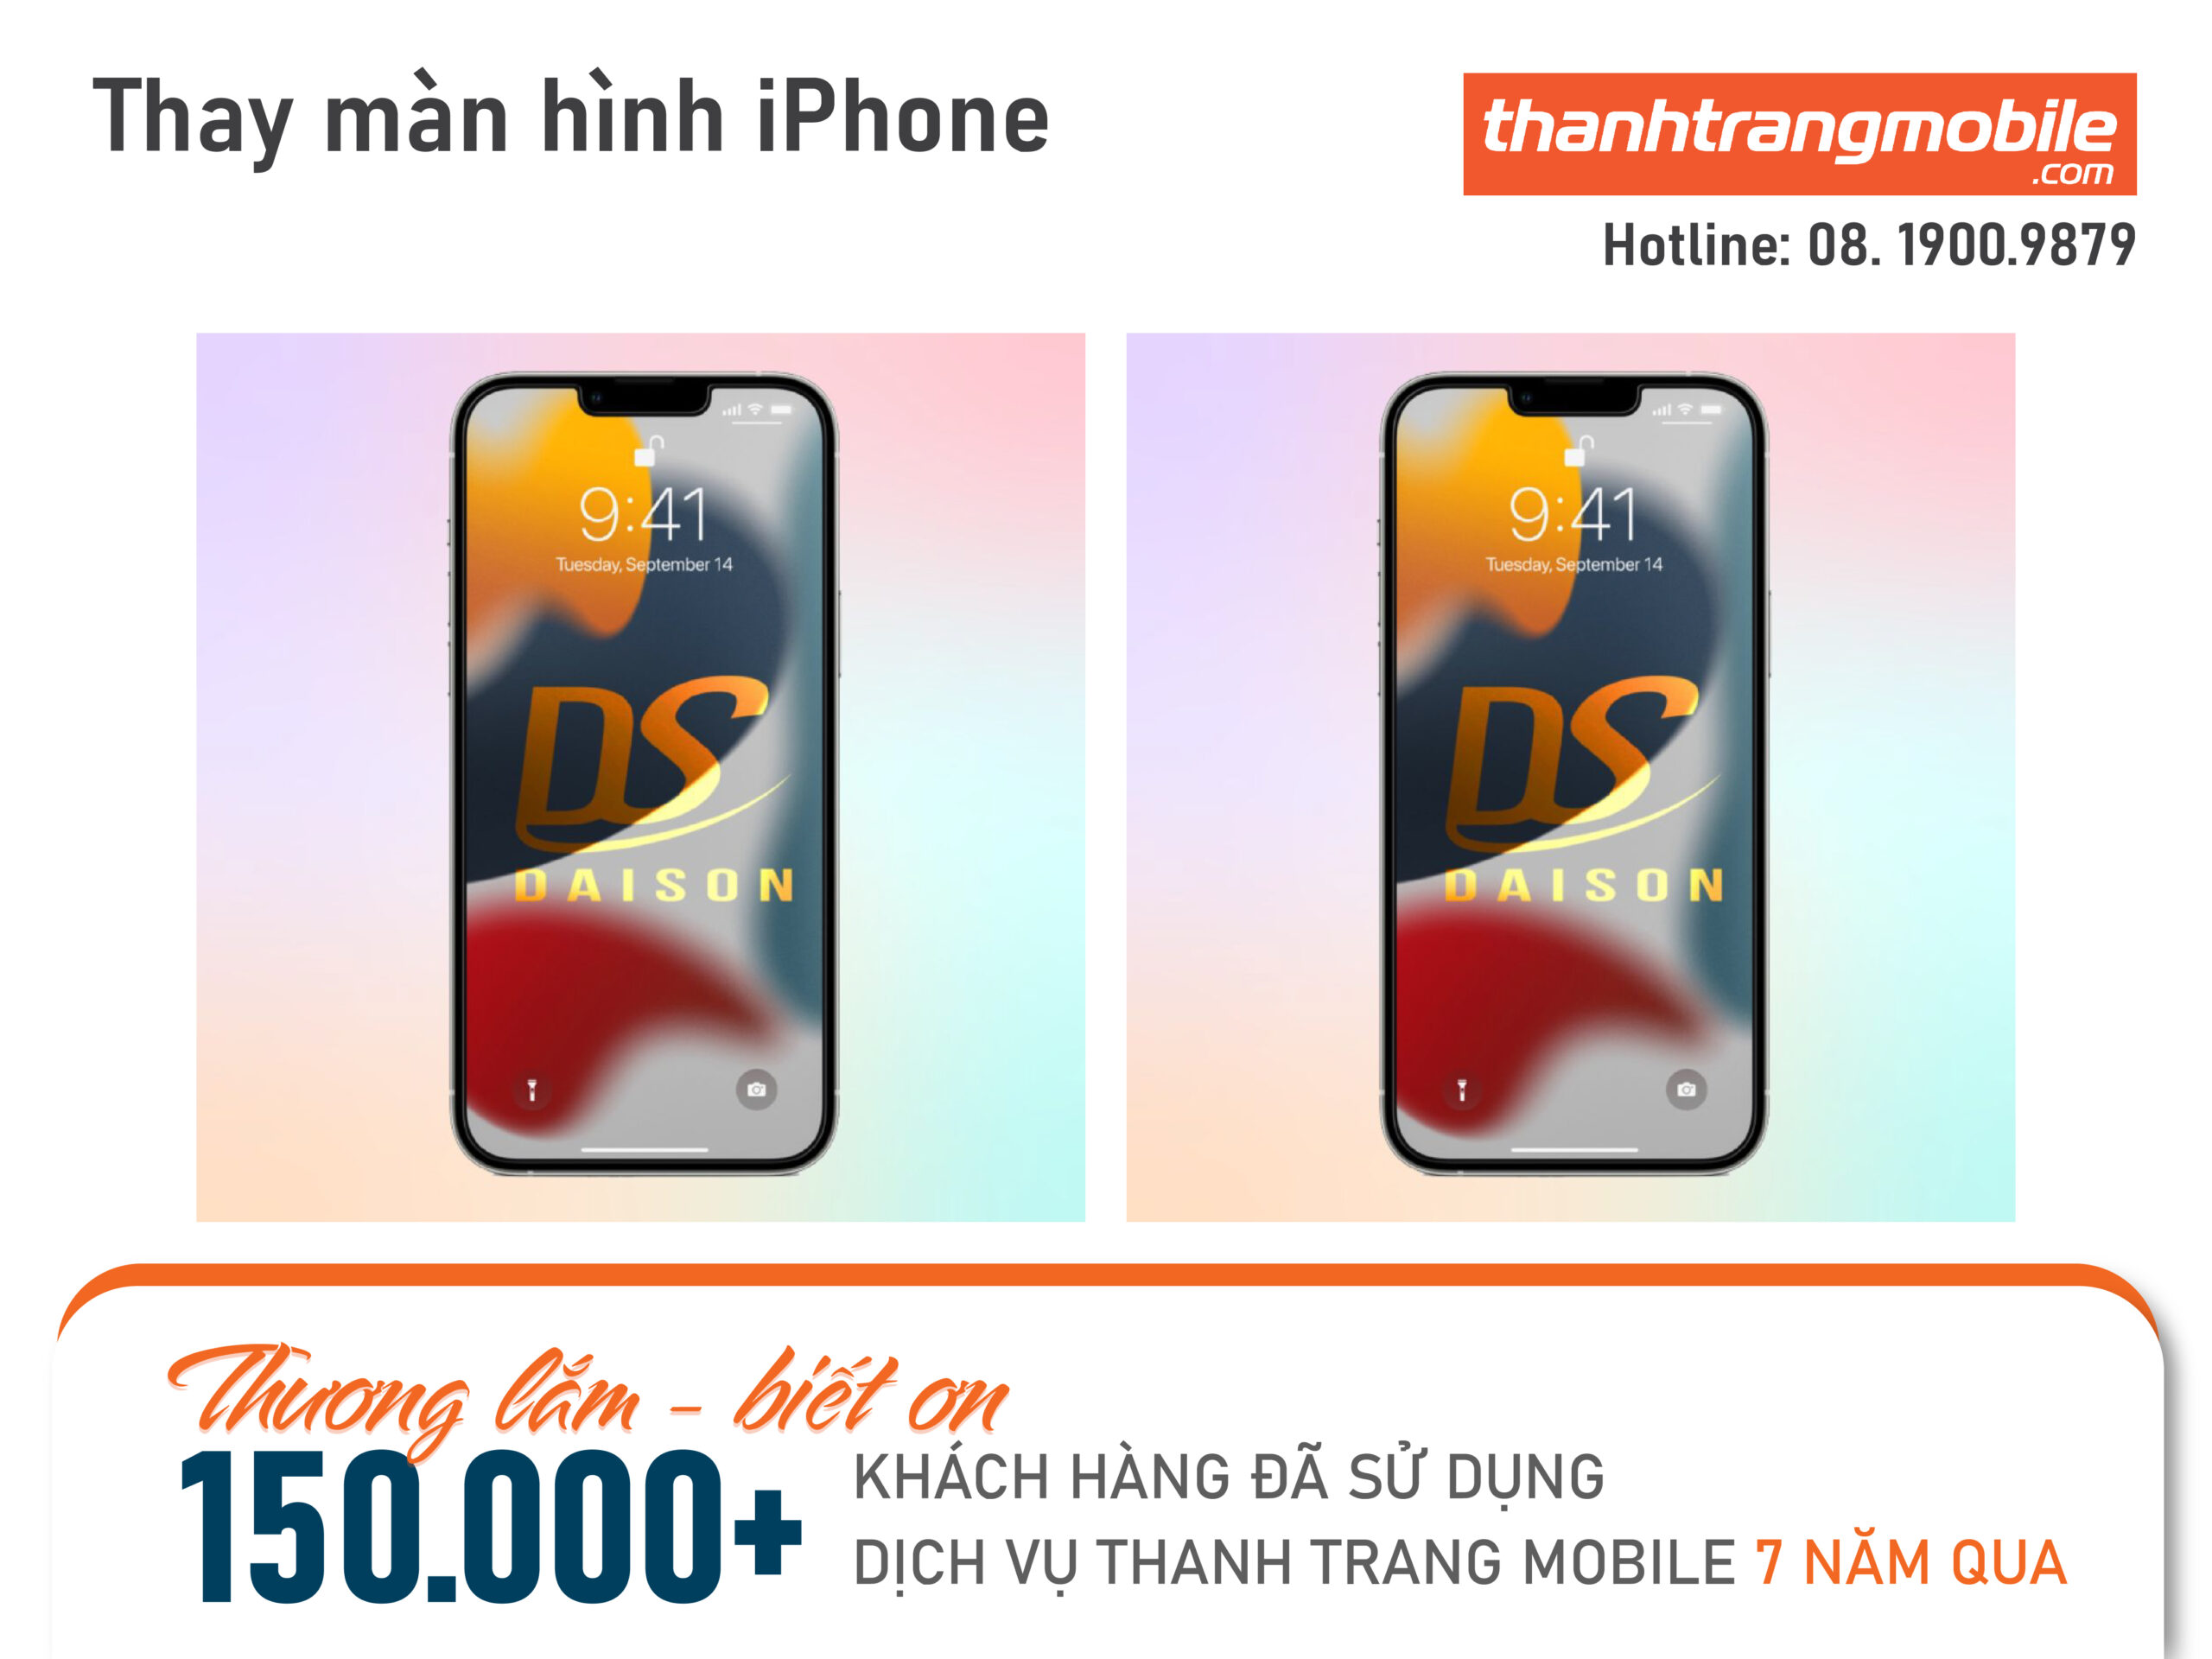 thay-man-hinh-iphone-thanhtrangmobile-2-scaled Thay Màn Hình iPhone 13 Pro